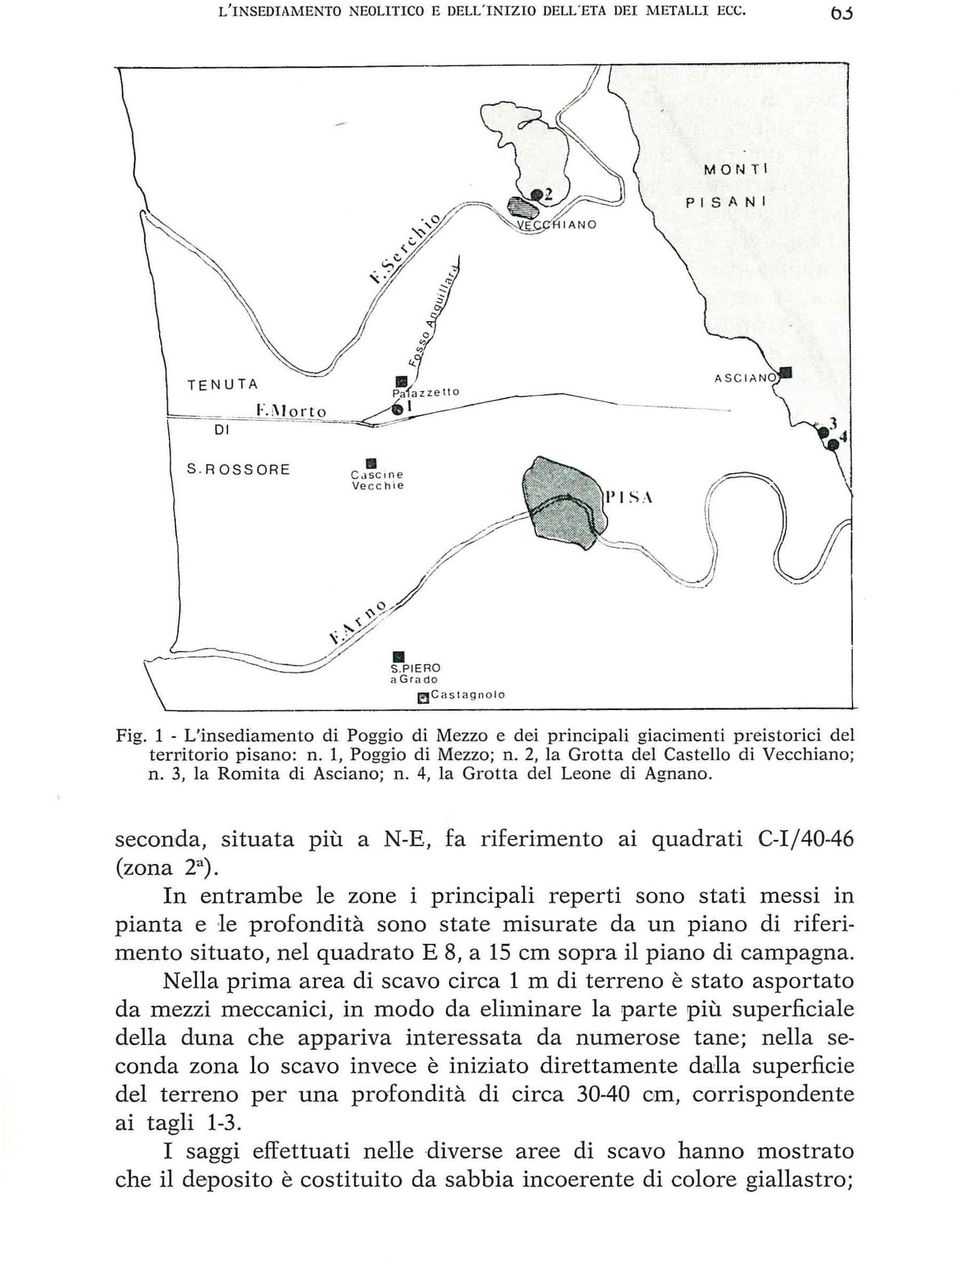 Grotta del Leone di Agnano, seconda, situata più a N-E, fa riferimento ai quadrati C-Ij40-46 (zona 2 a ).